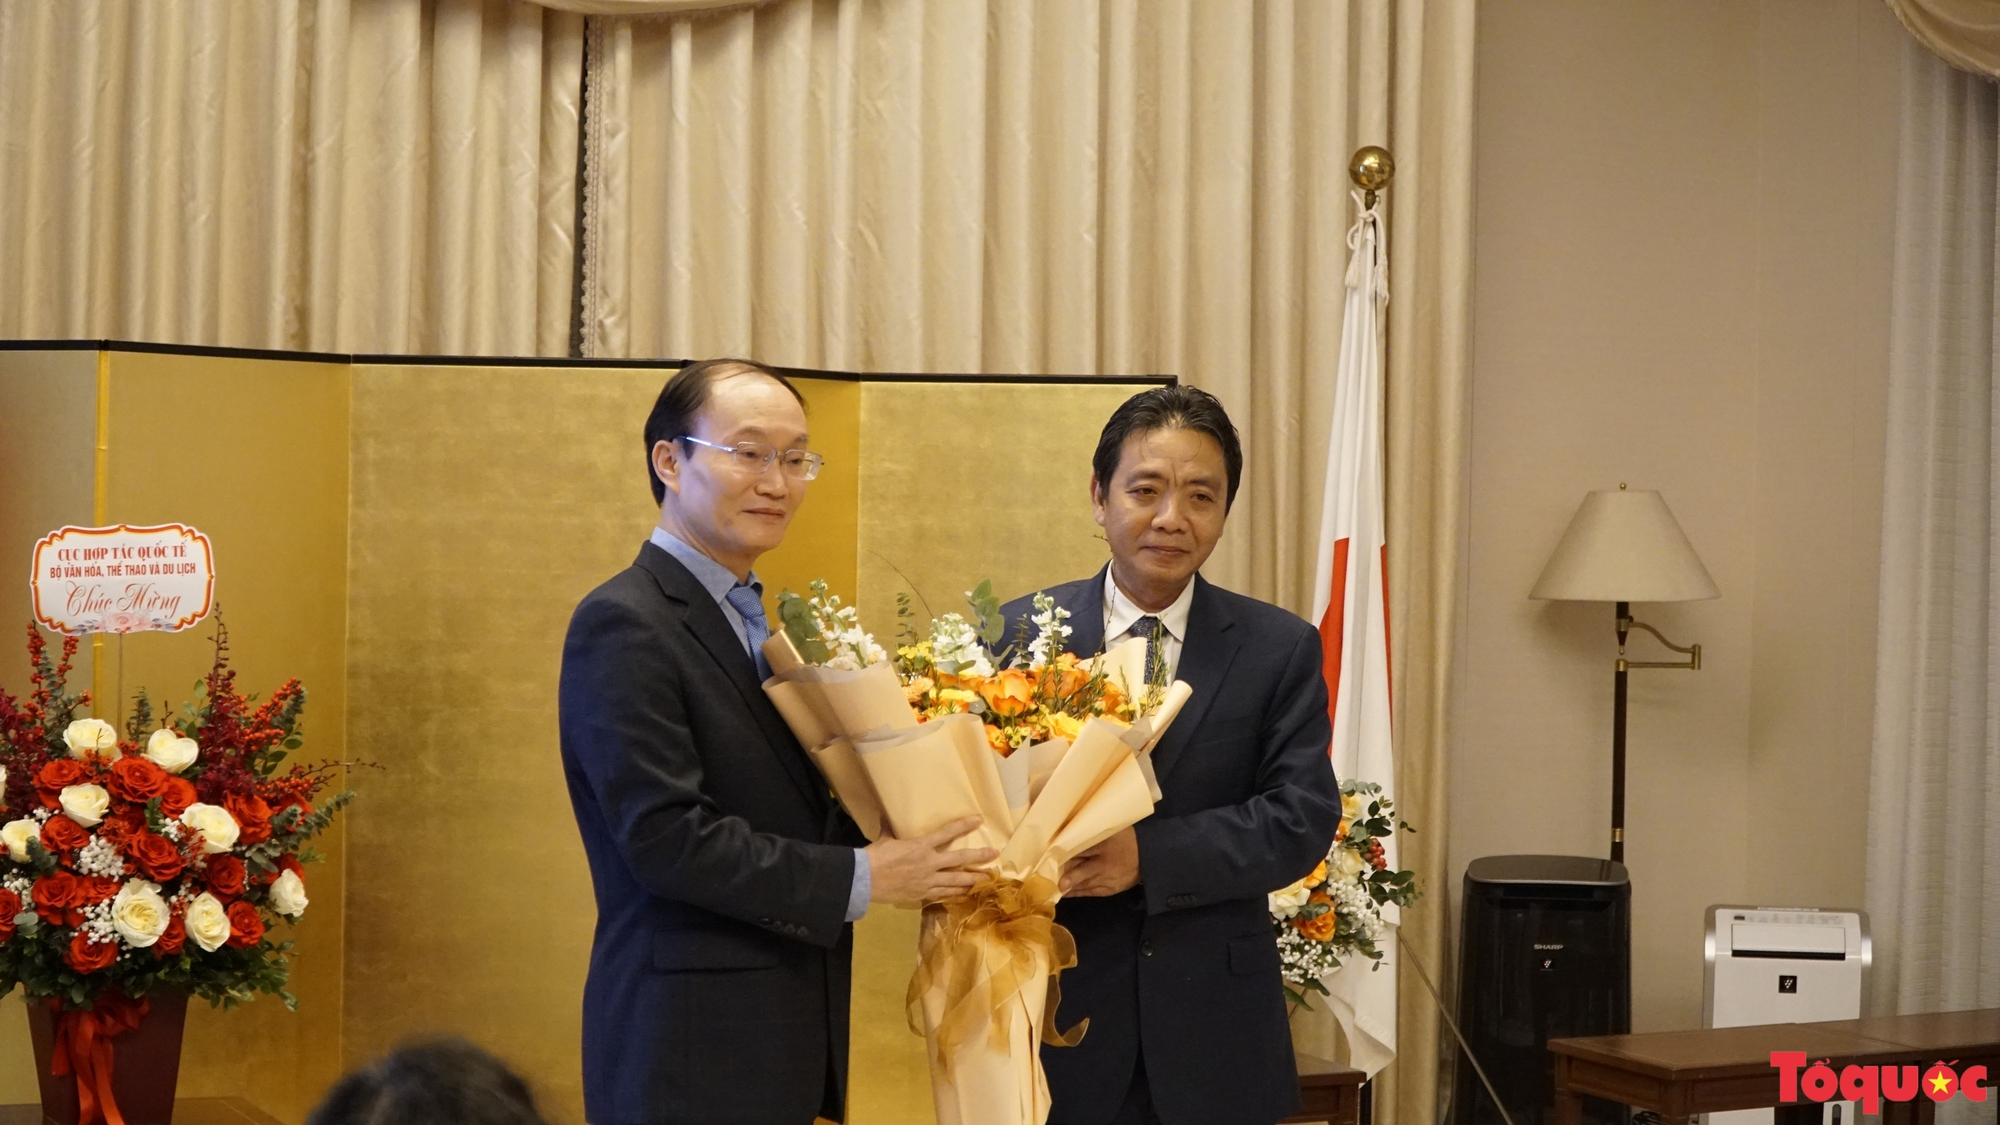 Trao tặng bằng khen cho ông Lê Ngọc Định vì những đóng góp sâu sắc cho sự phát triển văn hóa Việt Nam - Nhật Bản - Ảnh 4.